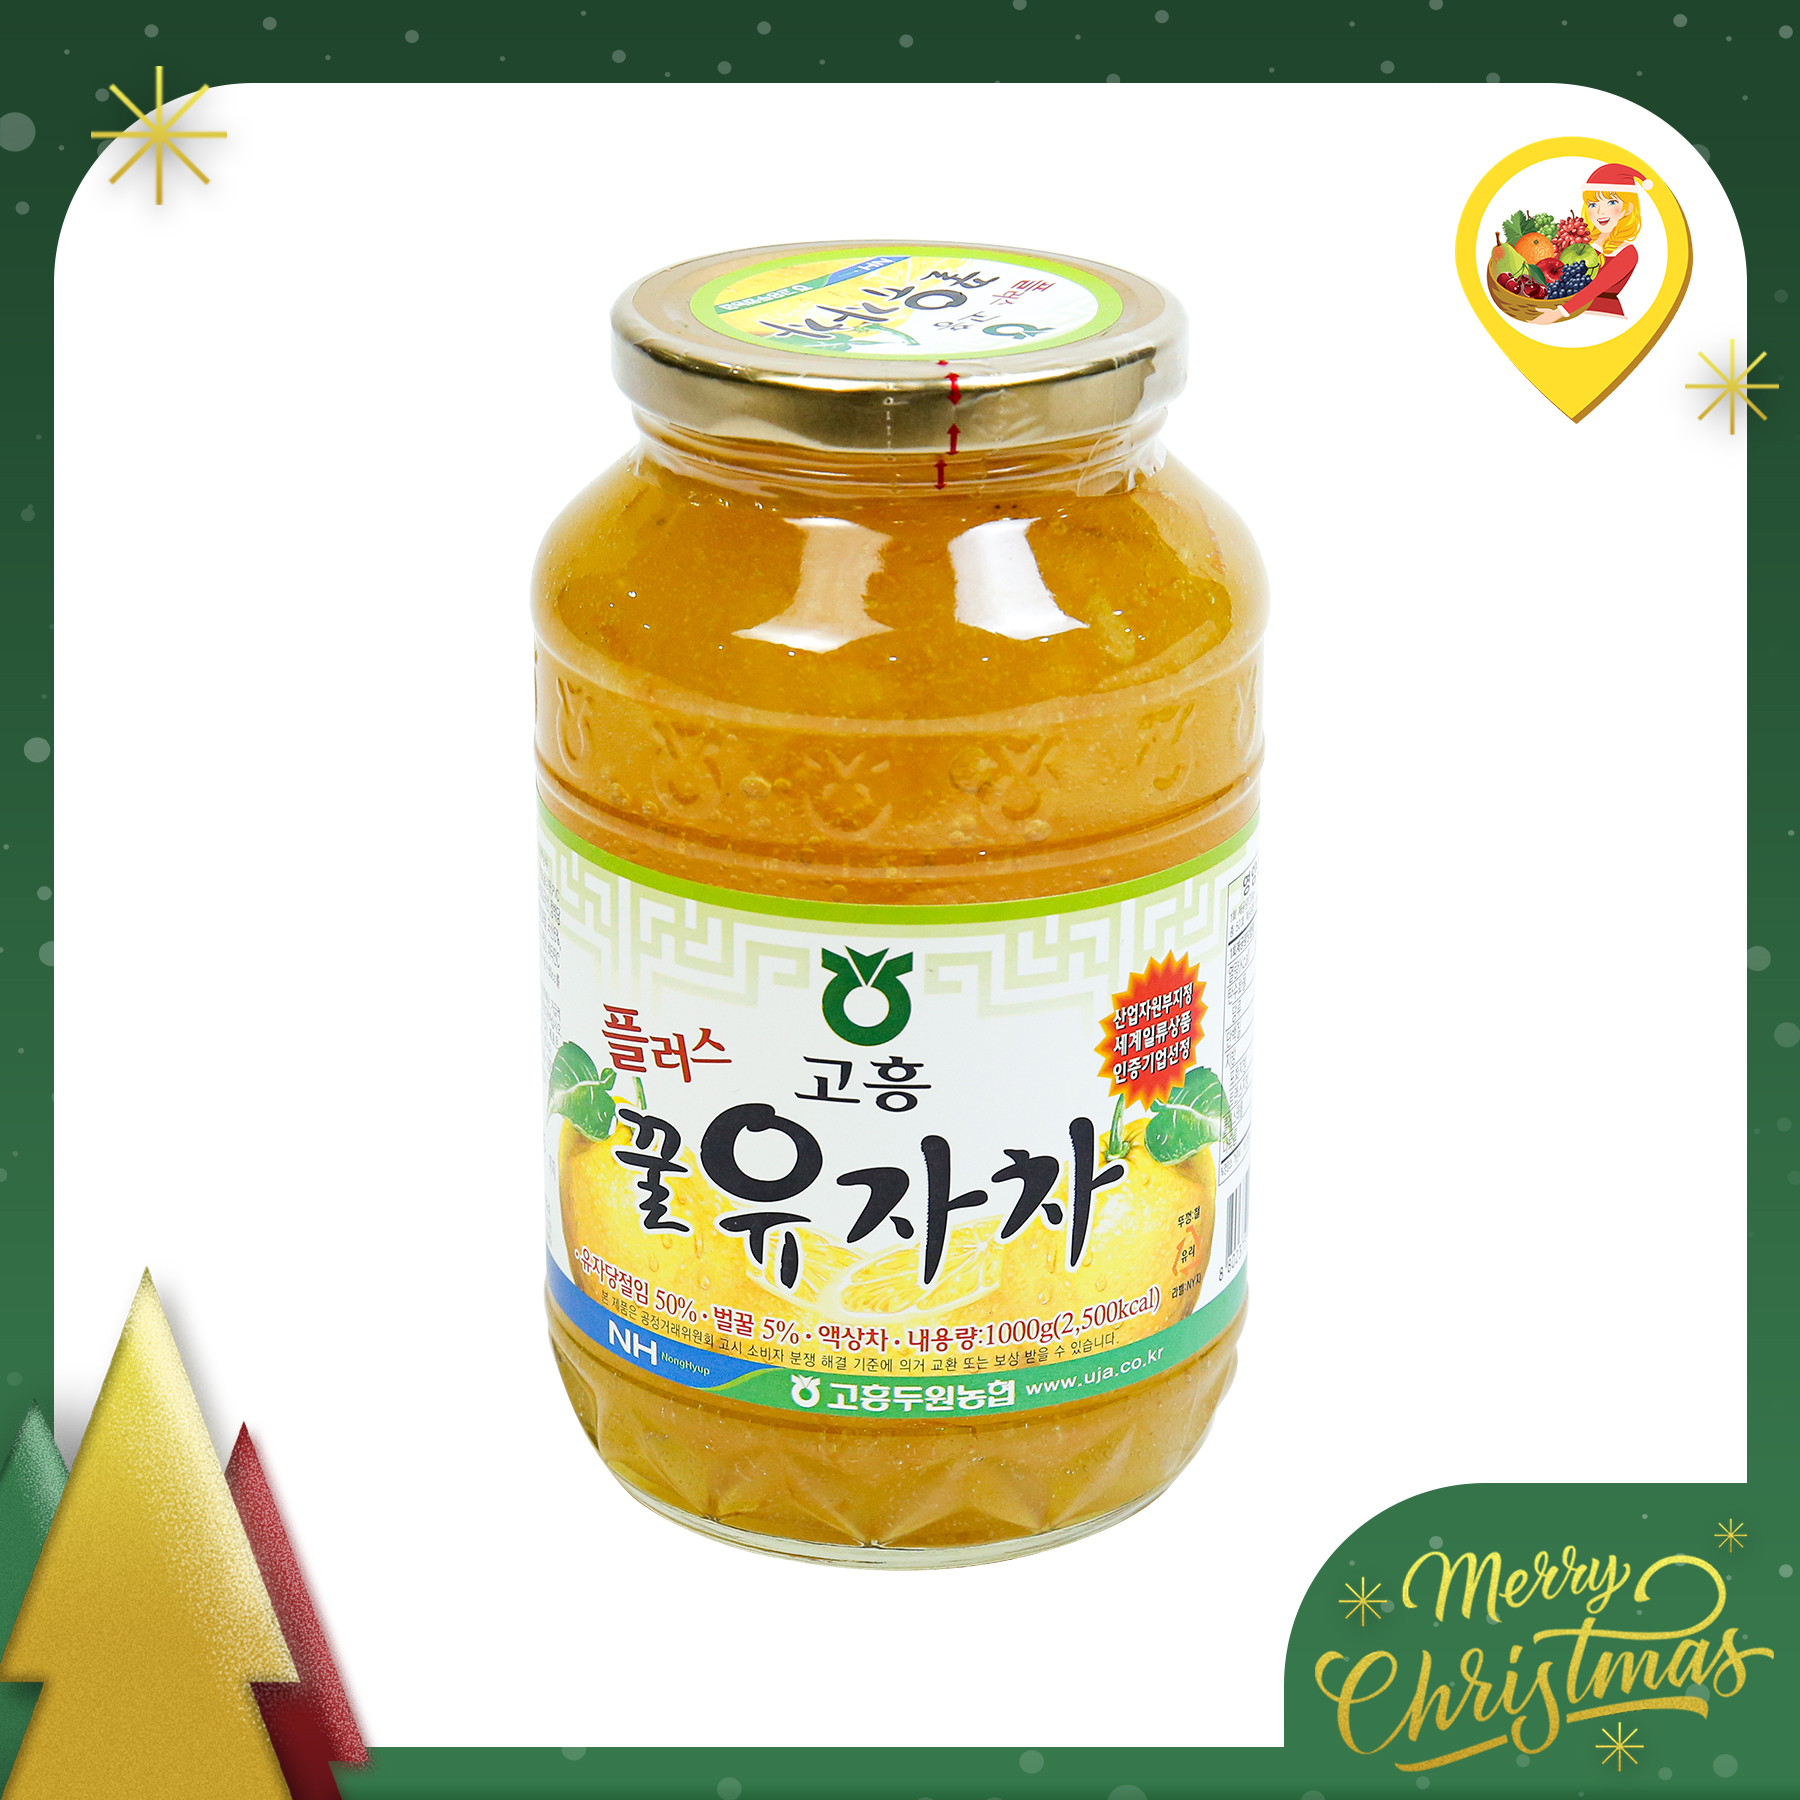 HCM - TERRISA LỌ 1 KG - Trà chanh mật ong Hàn Quốc - Giao nhanh